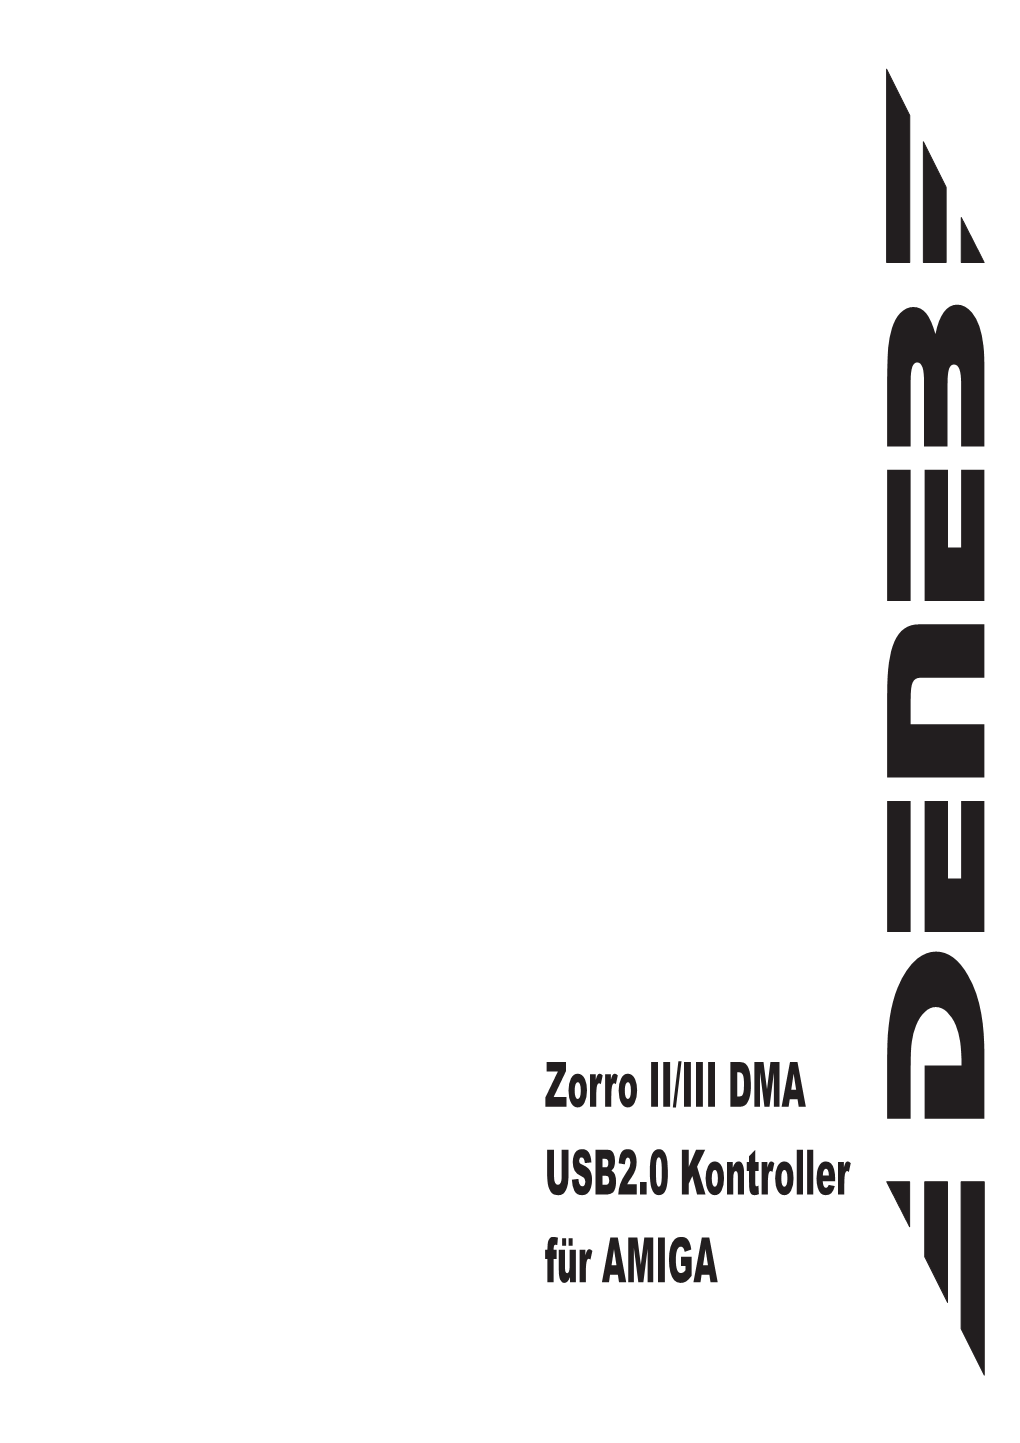 Zorro II/III DMA USB2.0 Kontroller Für AMIGA